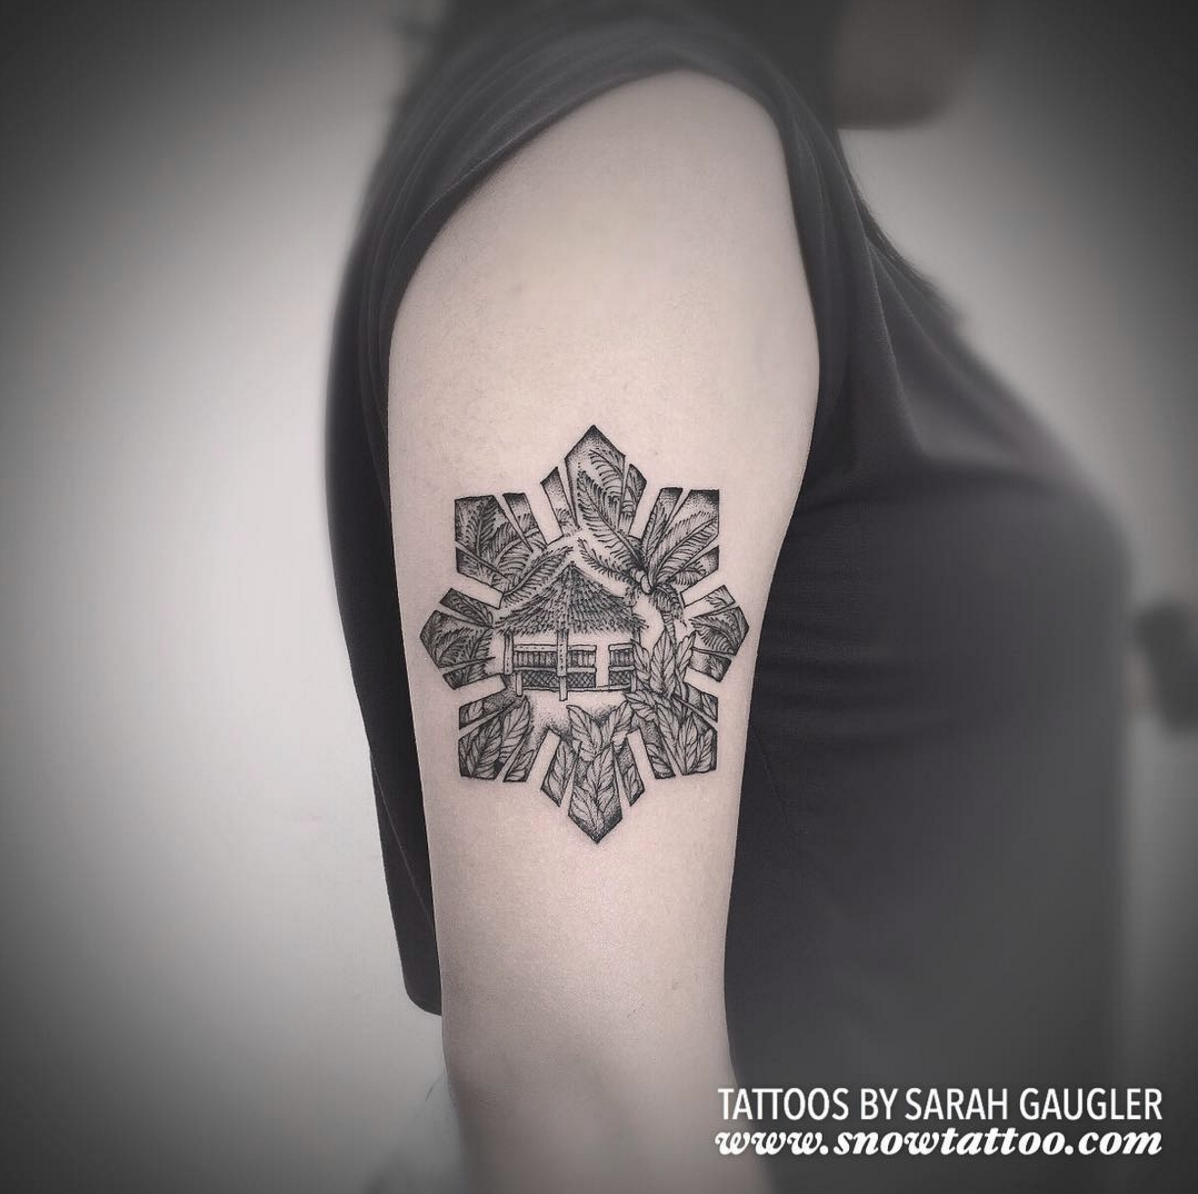 Sarah Gaugler Snow Tattoo Custom Filipino Philippine Nipa Hut Bahay Kubo Original Design Fine Line Finelinetattoo New York Best Tattoos Best Tattoo Artist NYC.png